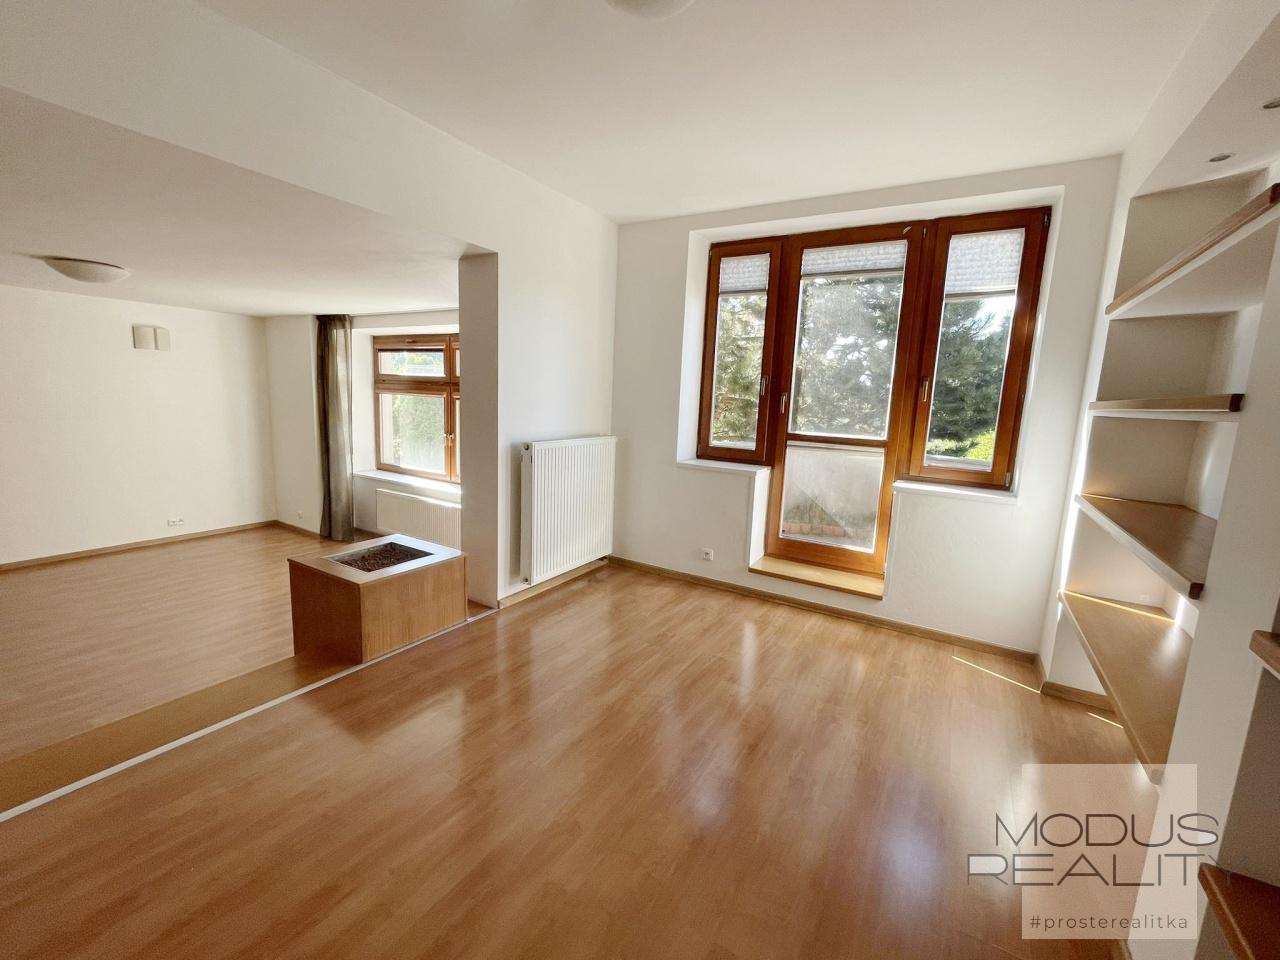 Pronájem rodinného domu, 7+1/2x Balkon, cca 380 m2, Praha - Stodůlky, zahrada, garáž, 4x koupelna